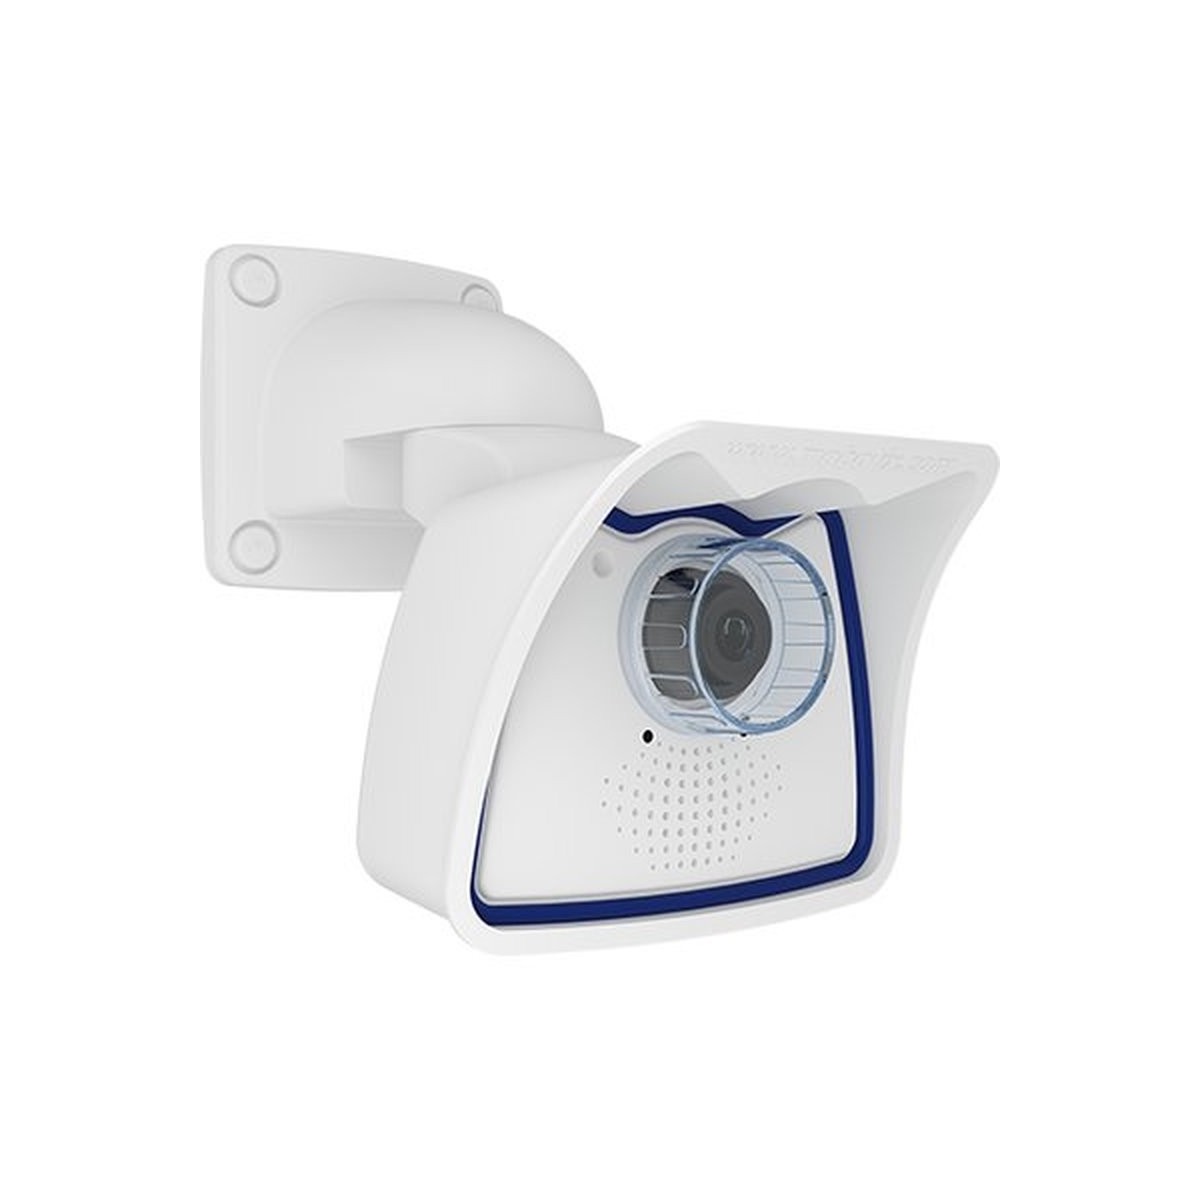 Mobotix Mx-M26B-6N237 - IP security camera - Indoor  outdoor - Wired - EN55032: 2012 EN55022: 2010 EN55024: 2010 EN50121-4: 2015